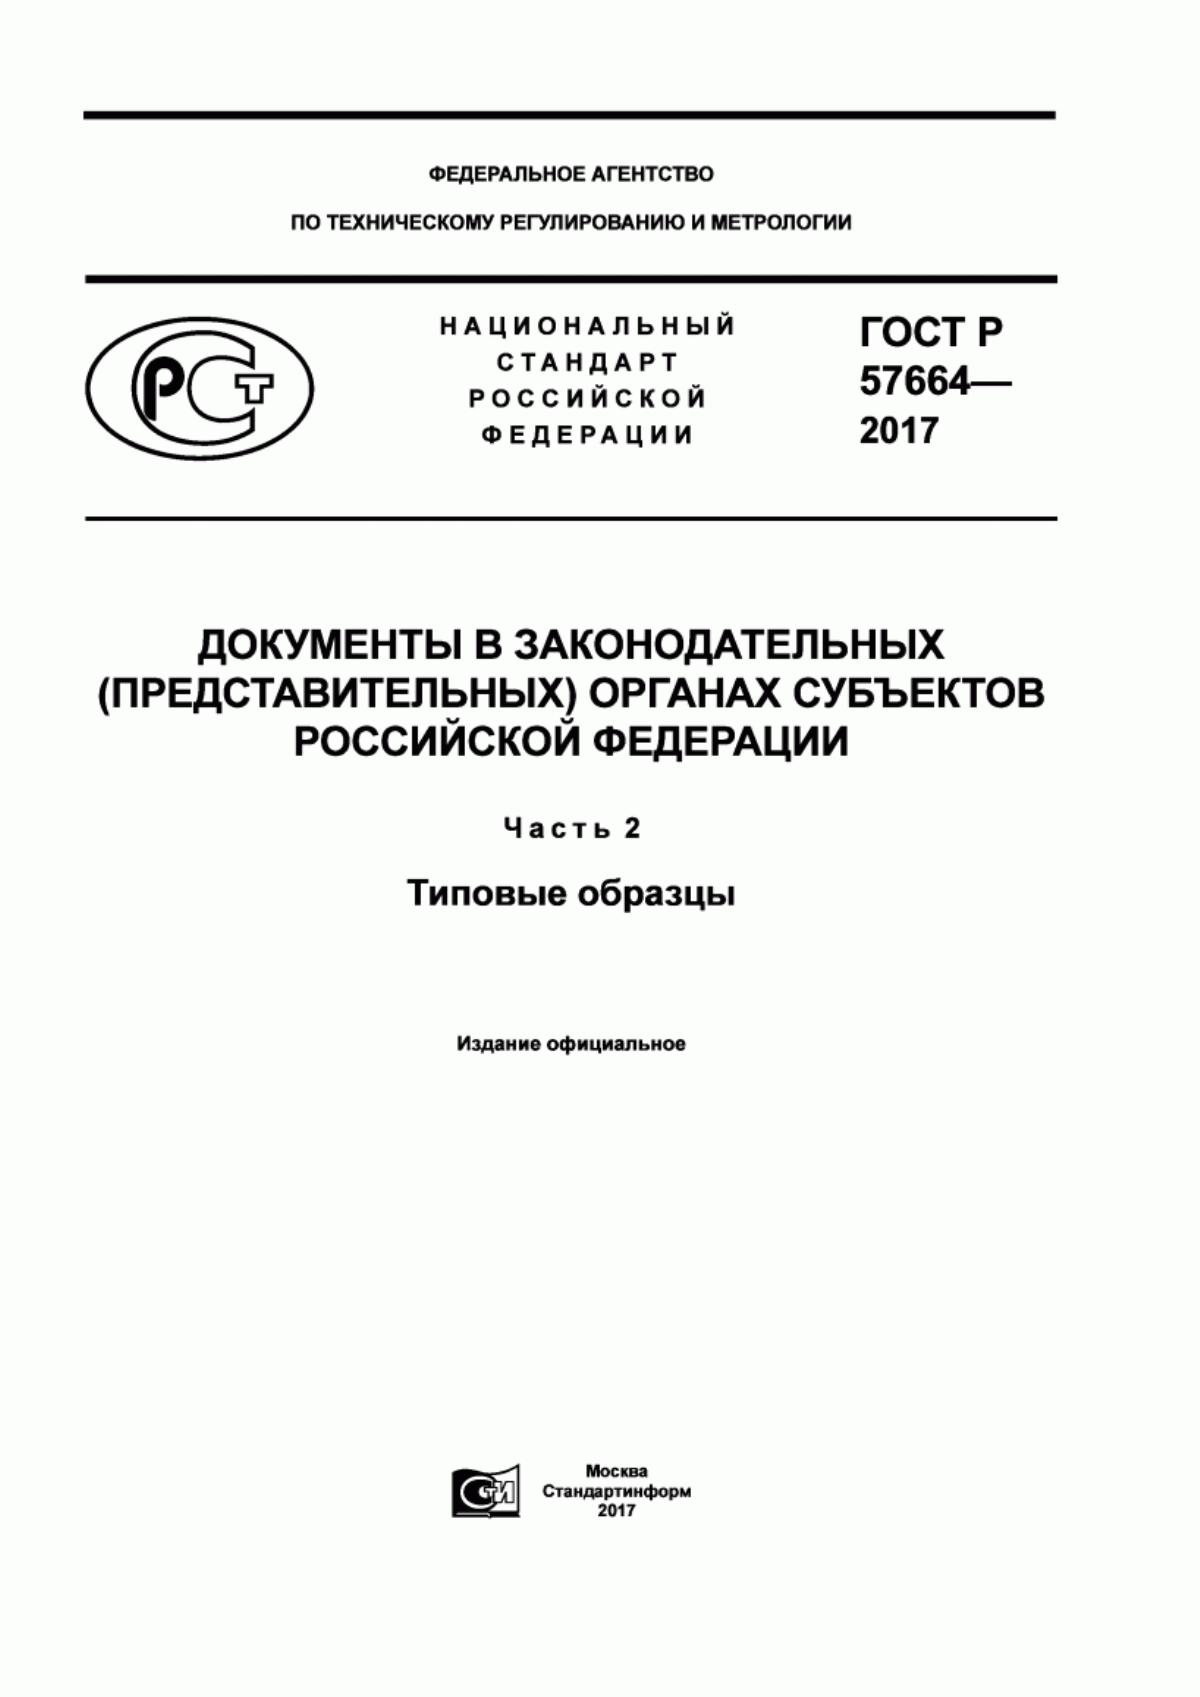 ГОСТ Р 57664-2017 Документы в законодательных (представительных) органах субъектов Российской Федерации. Часть 2. Типовые образцы